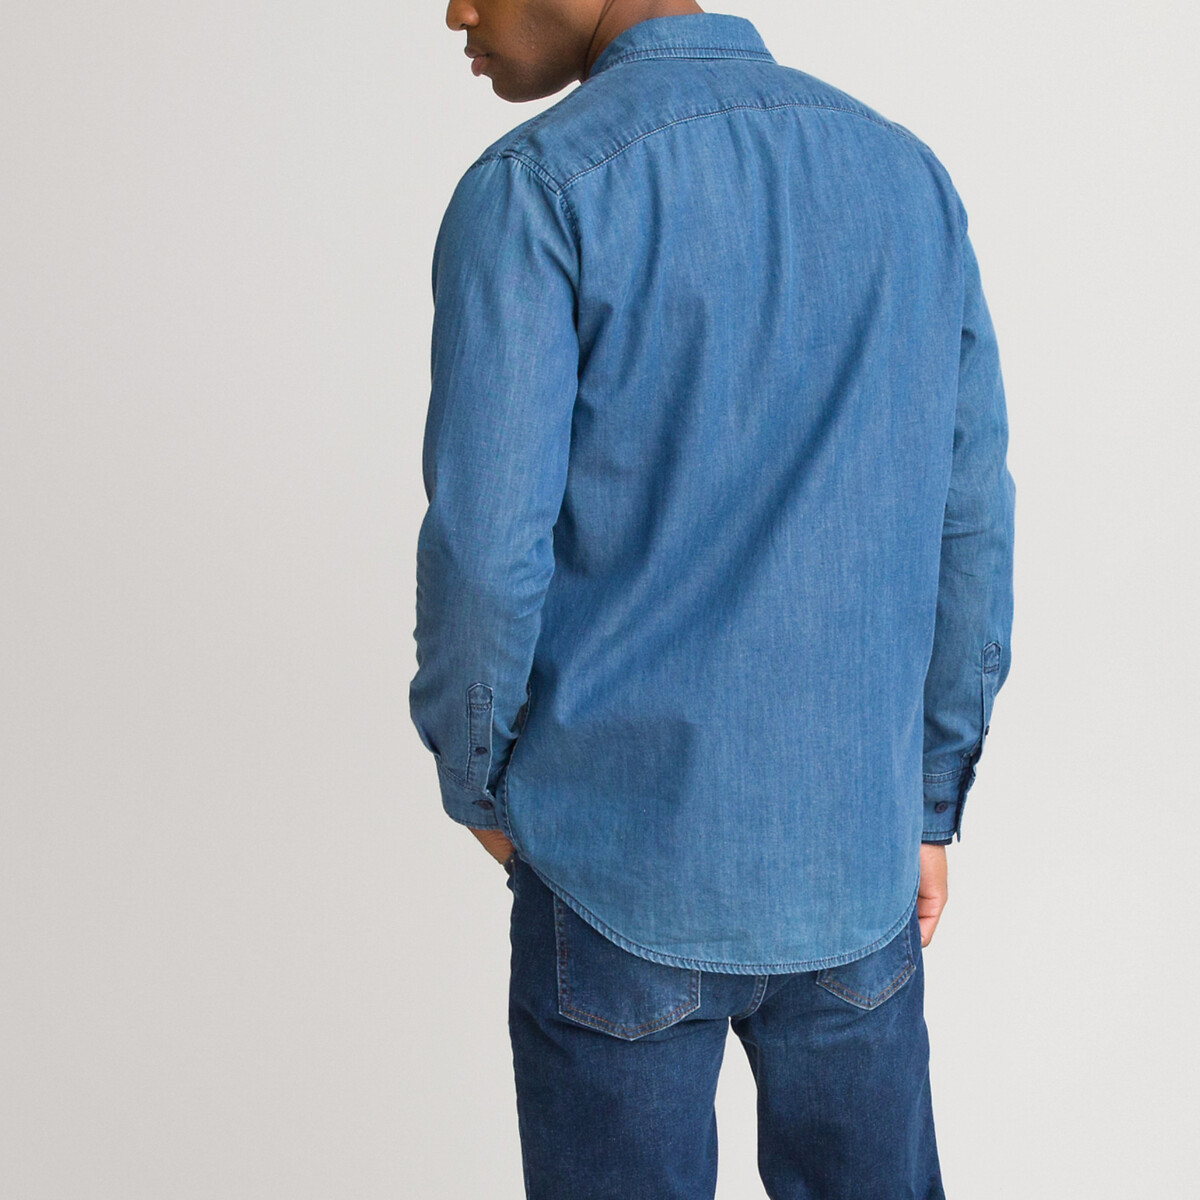 Рубашка LaRedoute Прямая джинсовая длинные рукава 37/38 синий, размер 37/38 Прямая джинсовая длинные рукава 37/38 синий - фото 4